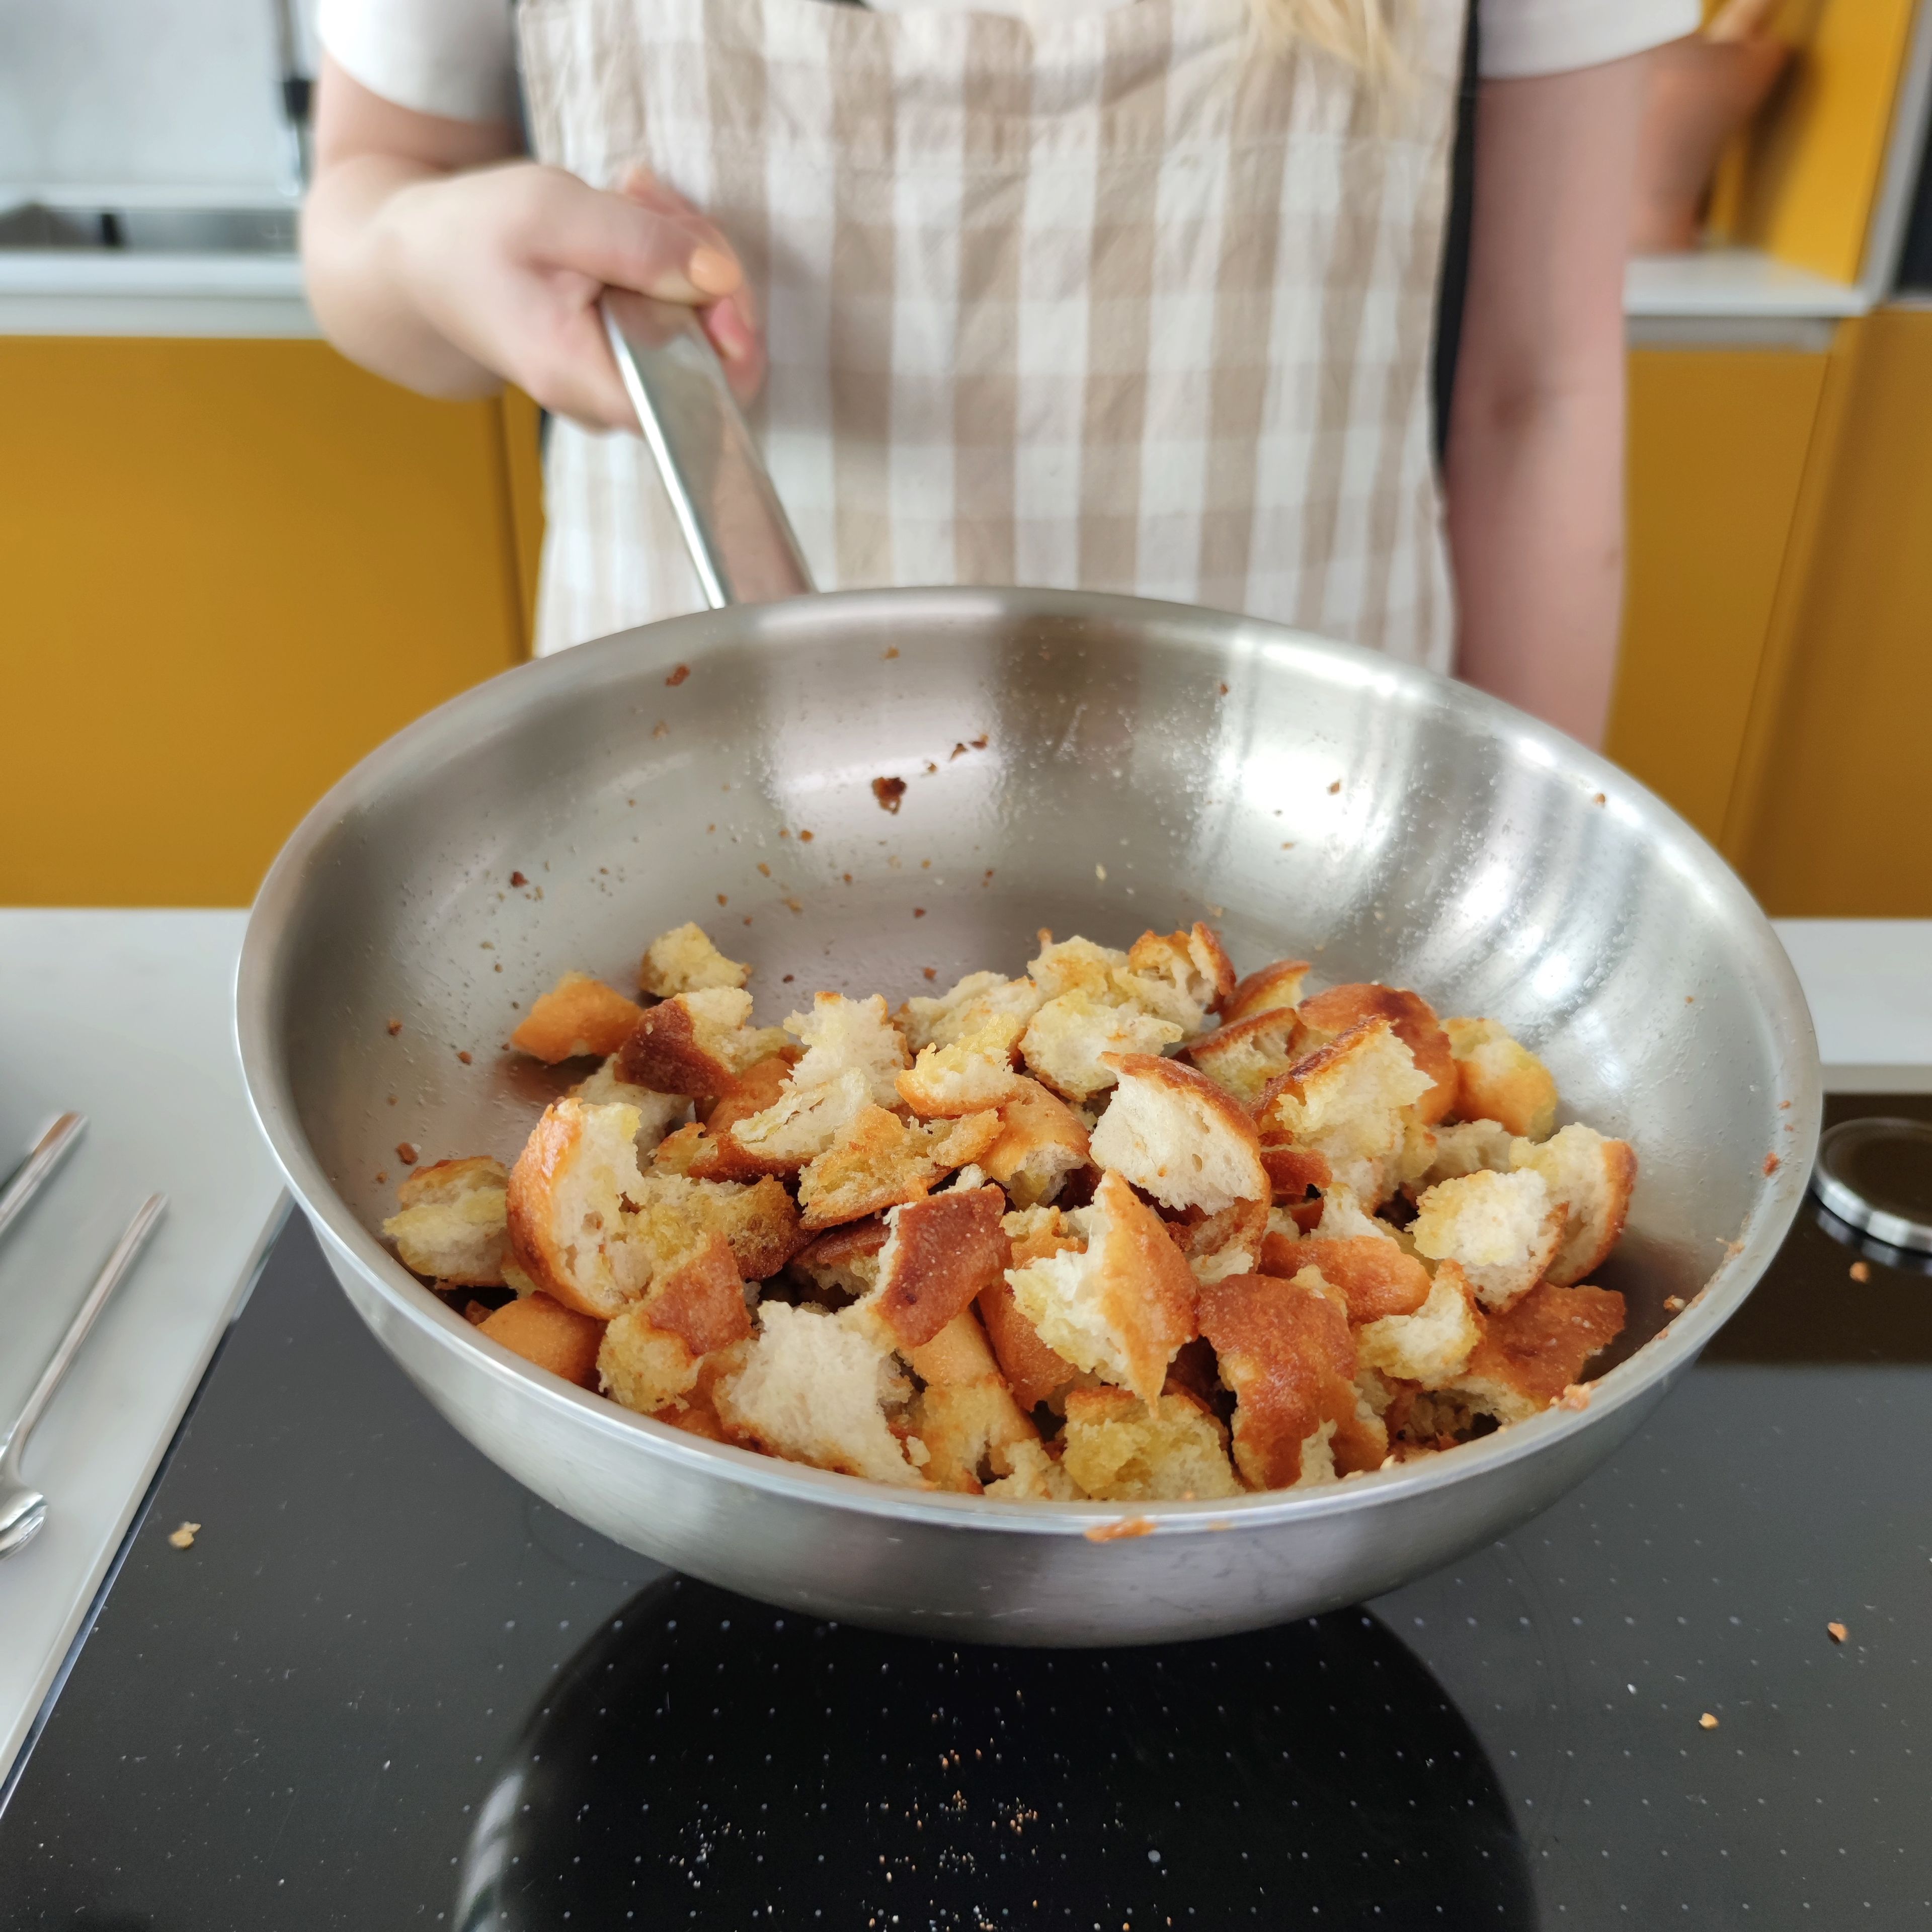 Das Baguette in mundgerechte Stücke reißen und in einer Pfanne mit ca. 3 EL  Olivenöl goldbraun ausbacken. Dann auf einem Küchentuch abtropfen und salzen.